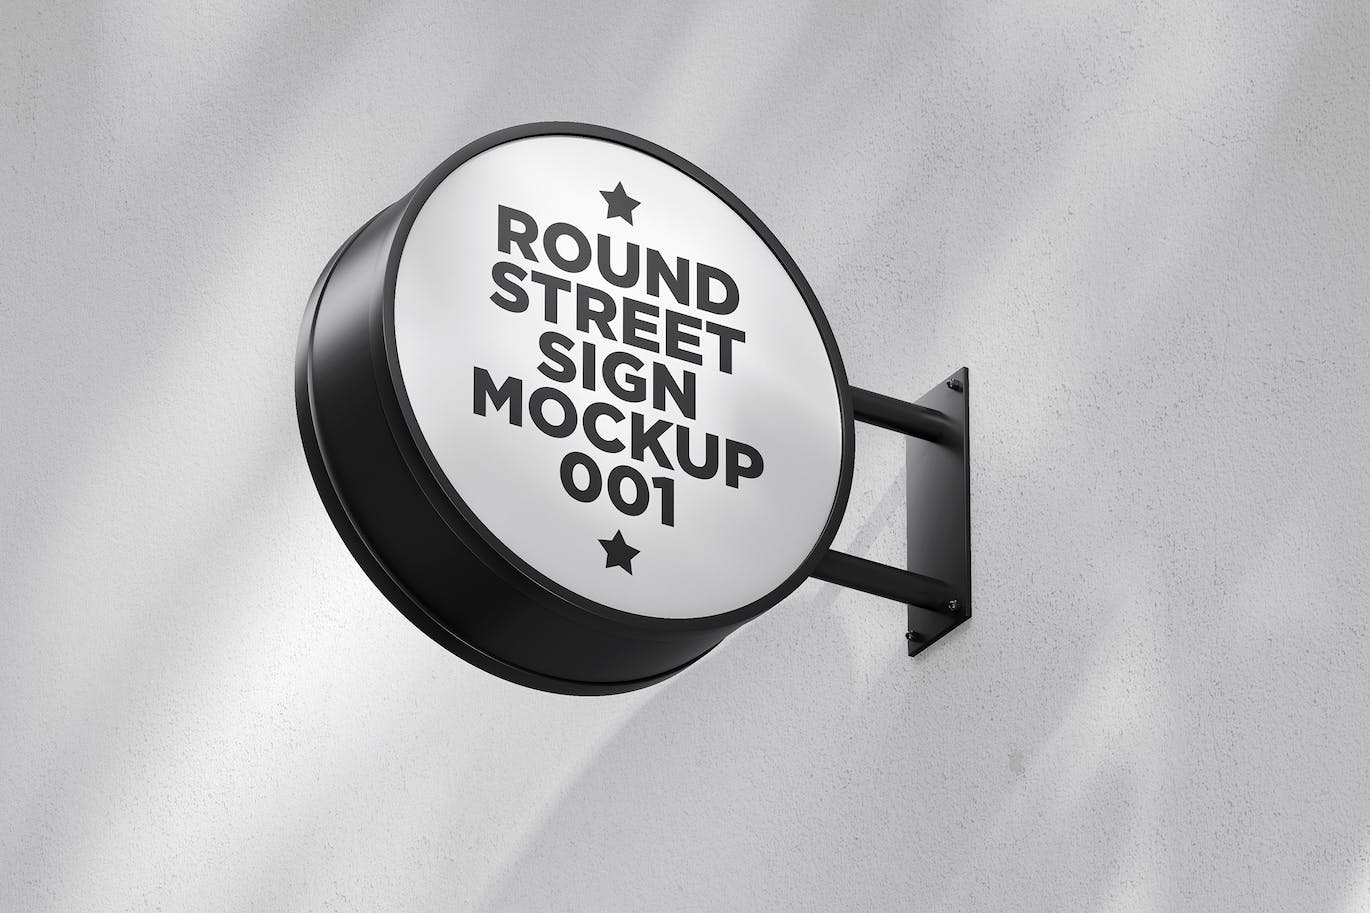 圆形街道标志招牌样机v1 Round Street Sign Mockup 001 样机素材 第1张